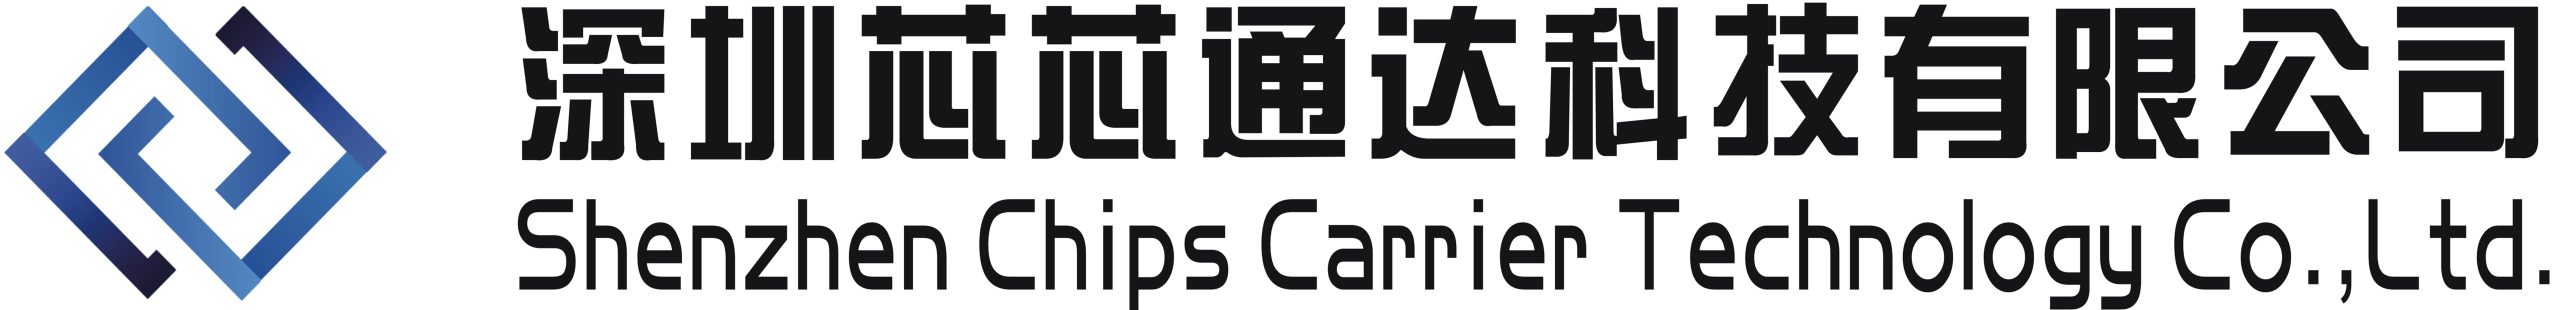 Shenzhen Chips Carrier Technology Co.,Ltd